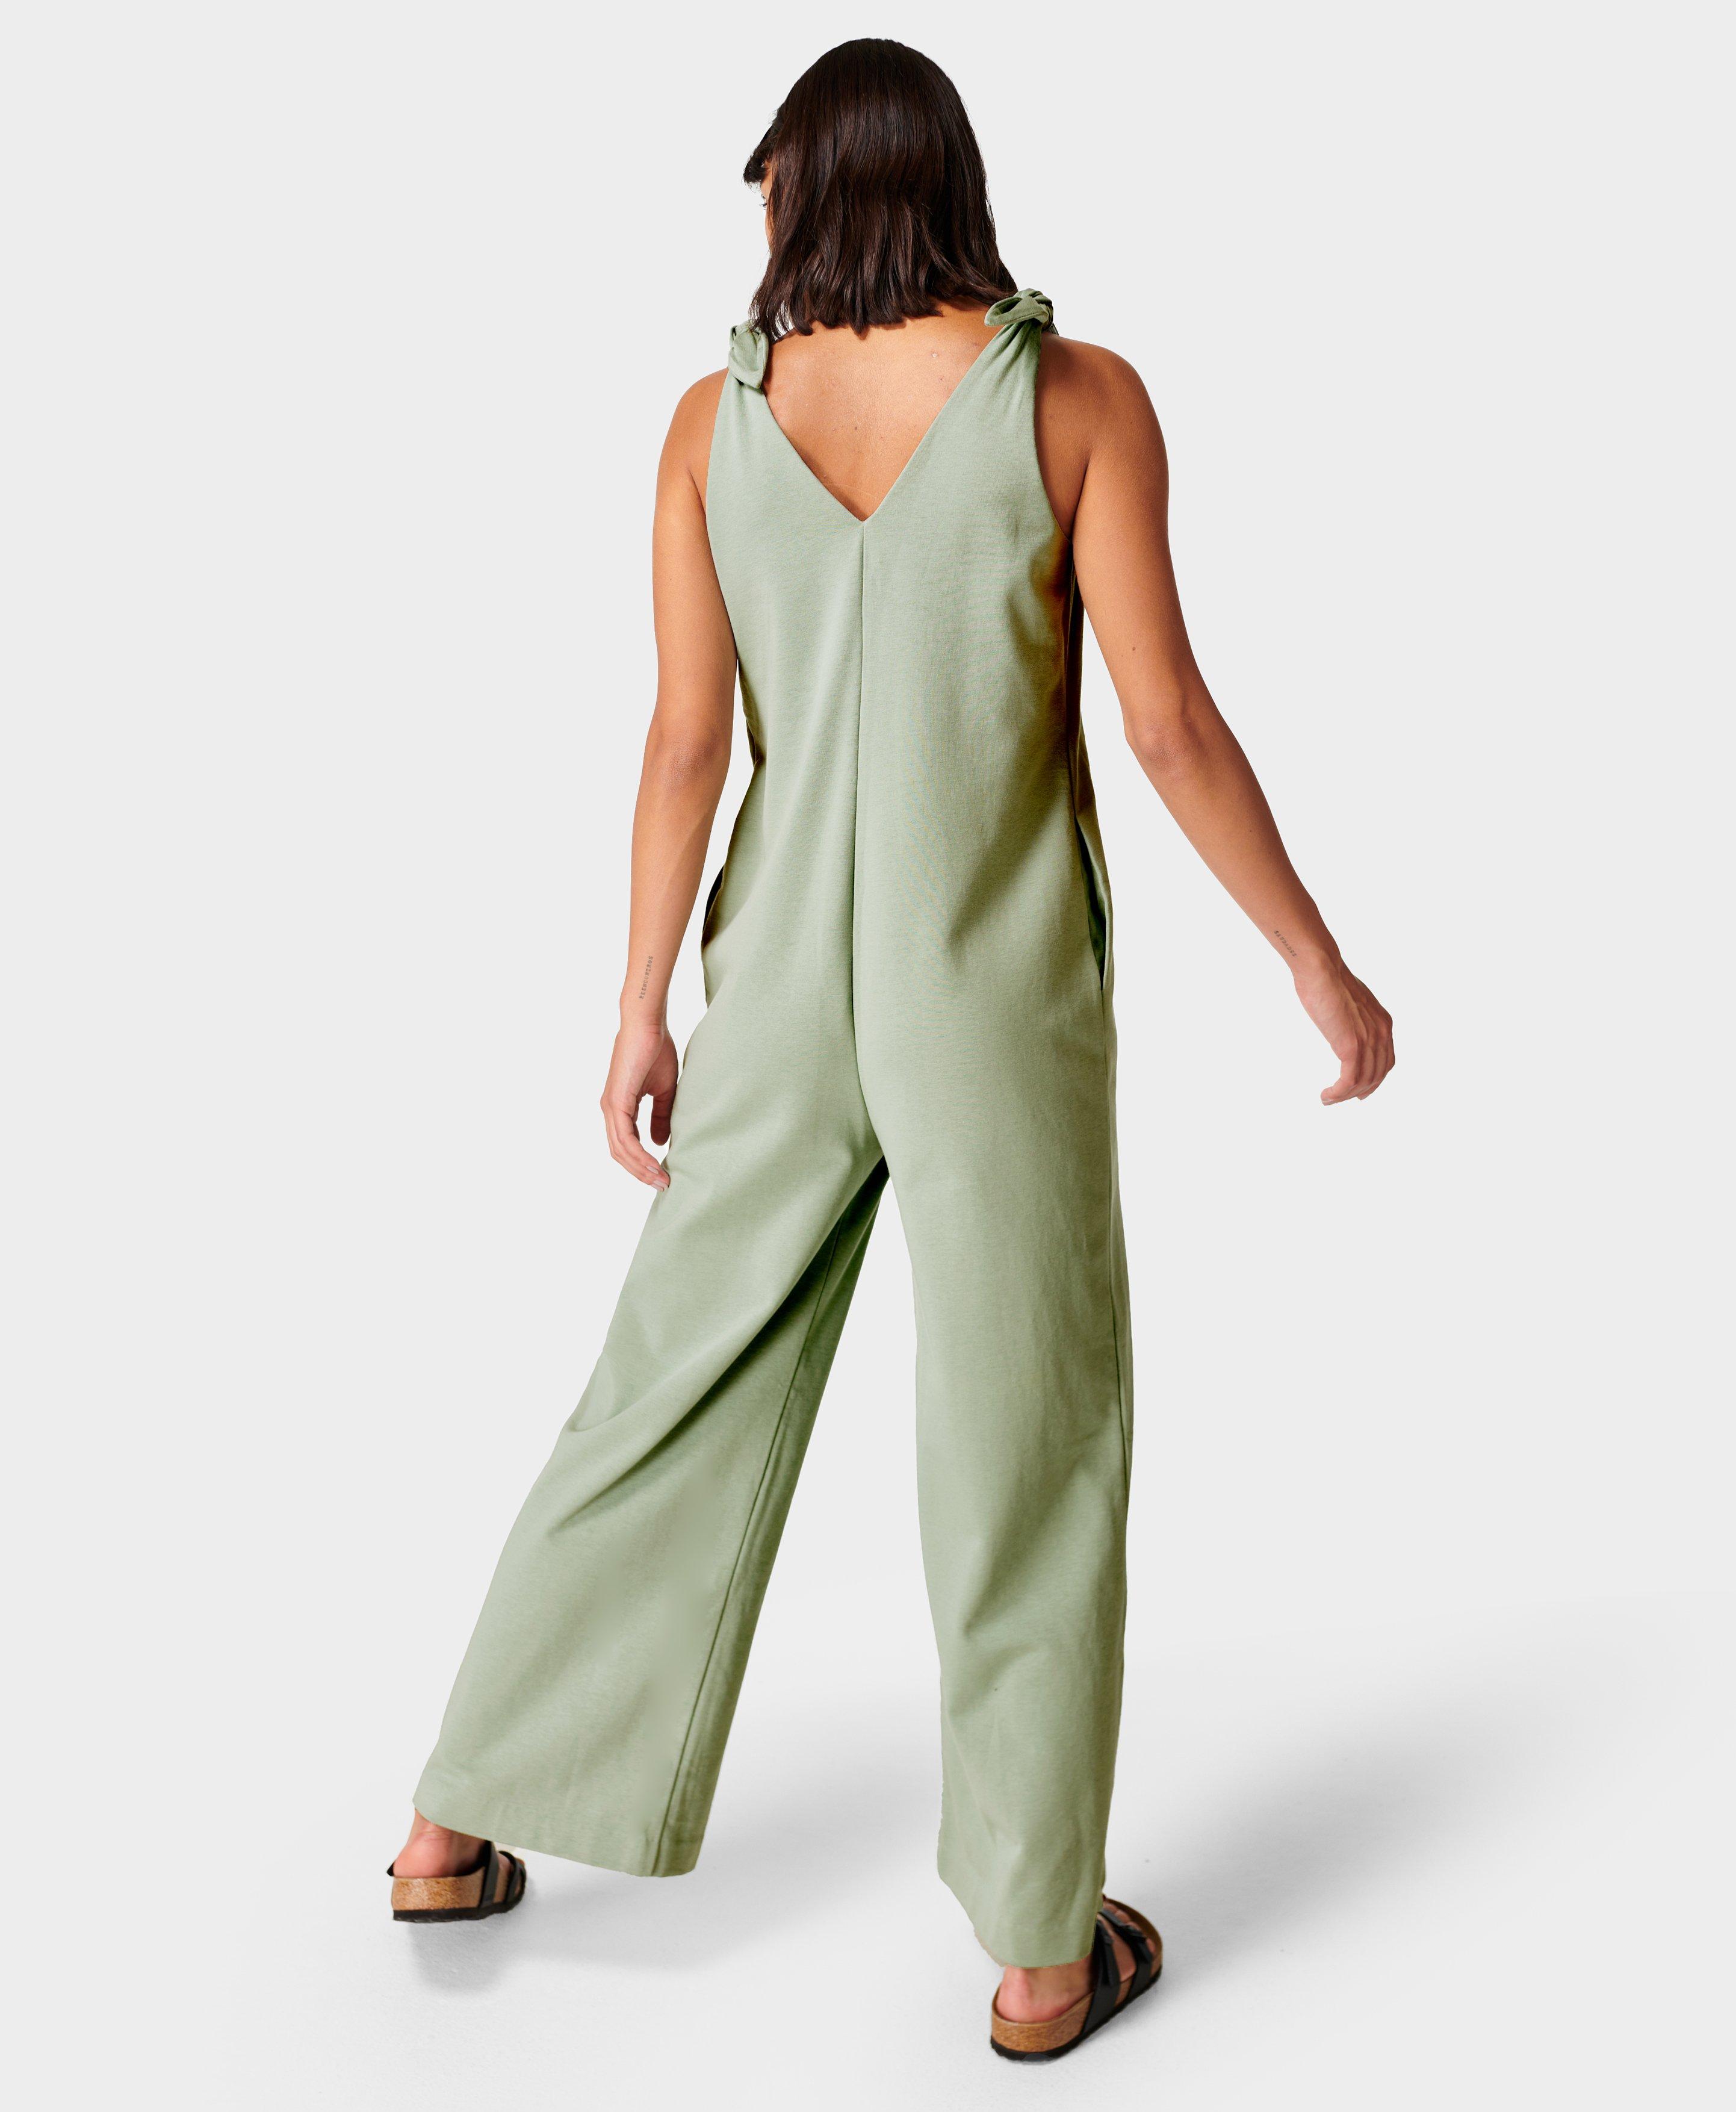 Harlow Strappy Jumpsuit - Eau de Nil Green